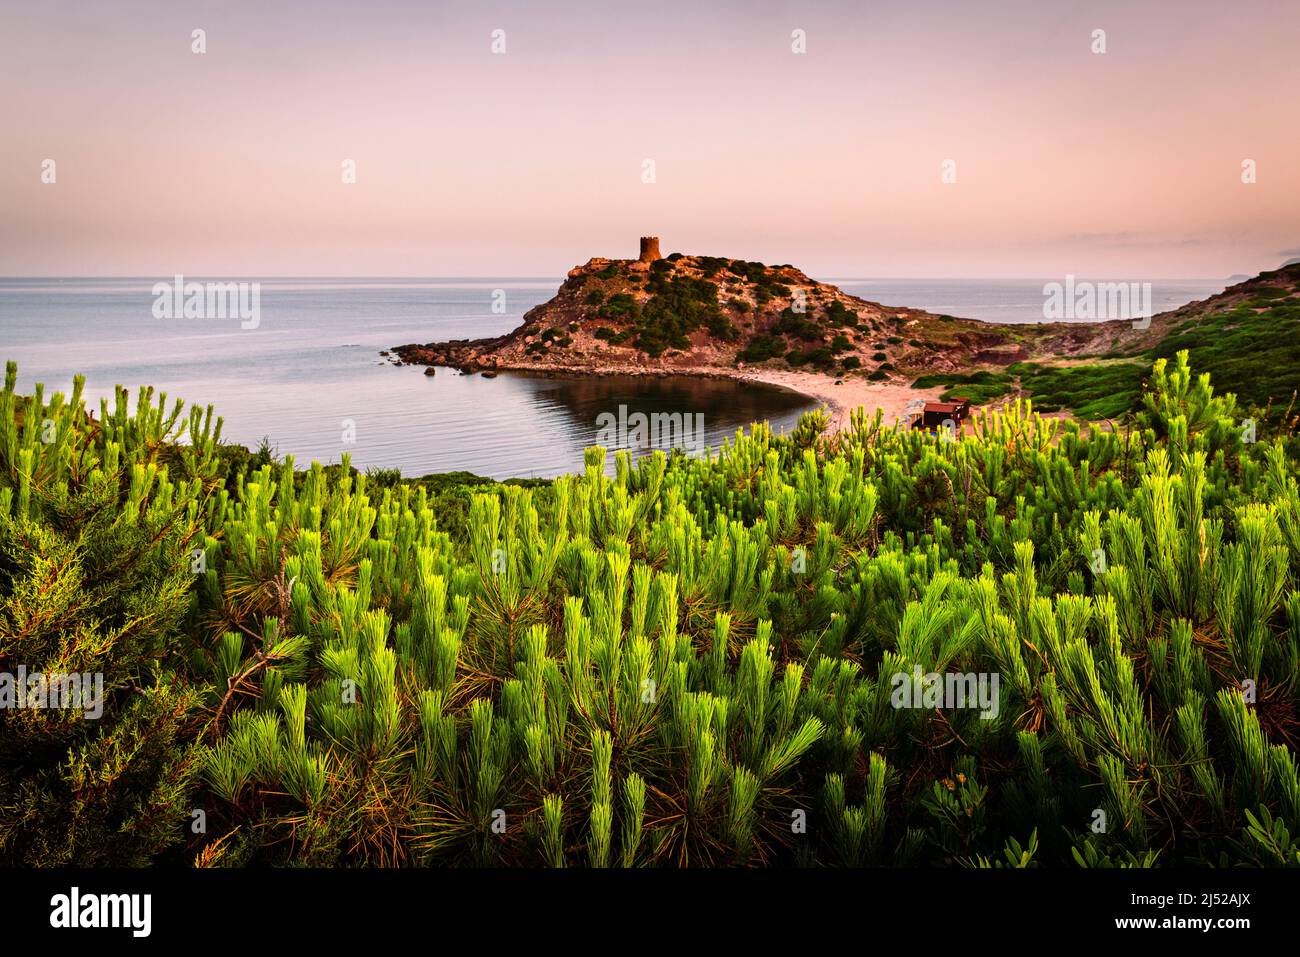 Kiefern vor dem Panorama mit dem Wachtturm und Strand der Bucht Torre del Porticciolo an der Westküste von Sardinien BEI Sonnenaufgang, Italien Banque D'Images